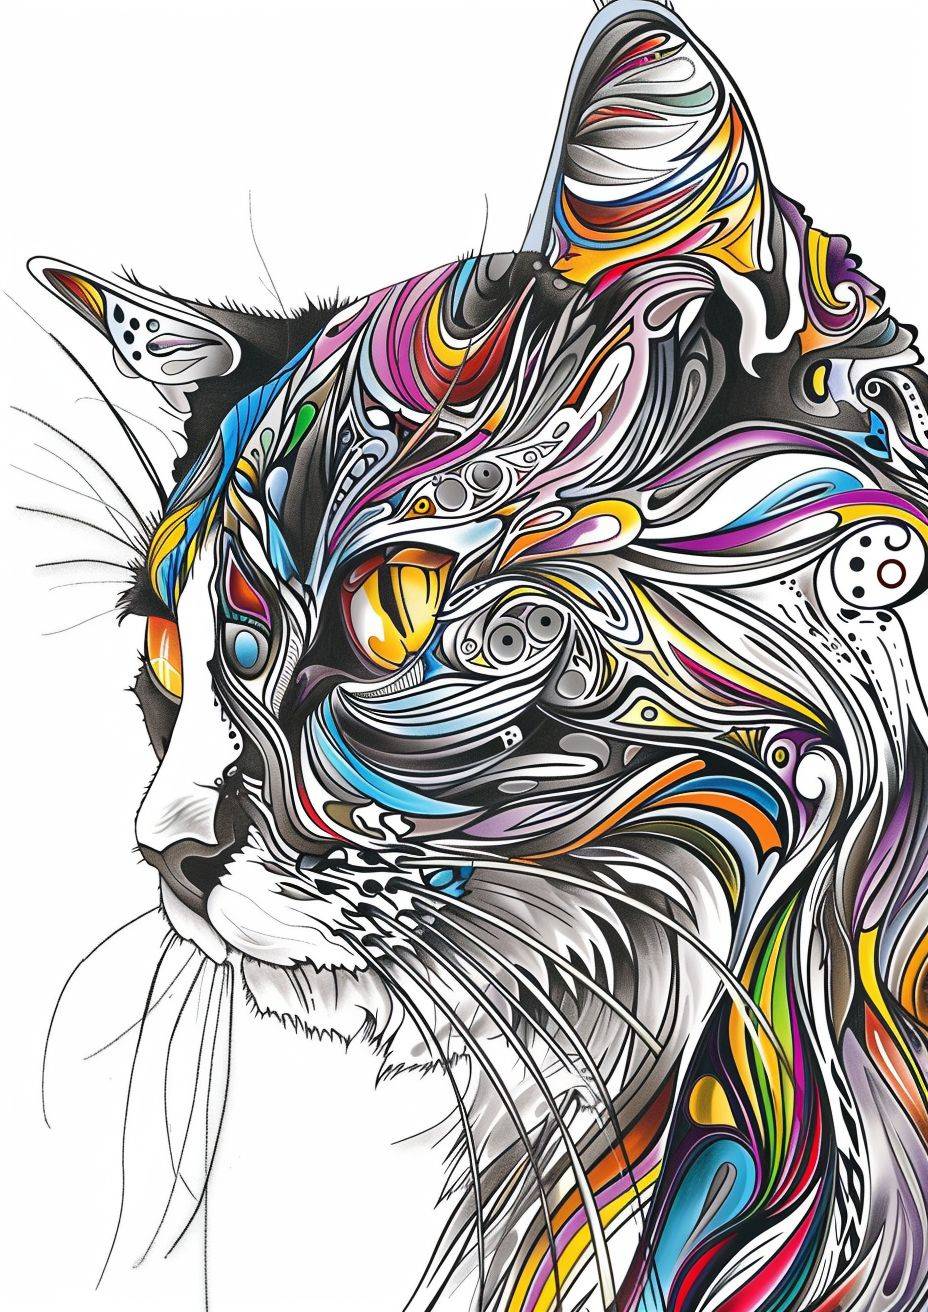 大人の塗り絵ブックを作成してください、白と黒の色のみを使用してください。リアルかつ芸術的な表現力豊かな動物の肖像を作成してください。各動物をユニークにする鮮やかな色彩と複雑なディテールを捉えてください。家の猫やシャム、それぞれの生物の本質を視覚的に見事かつ感情的に共鳴する方法で引き出してください。多様なカラーパレットを使用し、芸術的なスタイルで動物王国の多様性と美しさを伝える実験をしてください。創造力を発揮し、これらの動物の肖像を通じて自然界に対する畏敬と感謝の気持ちを引き起こしてください。